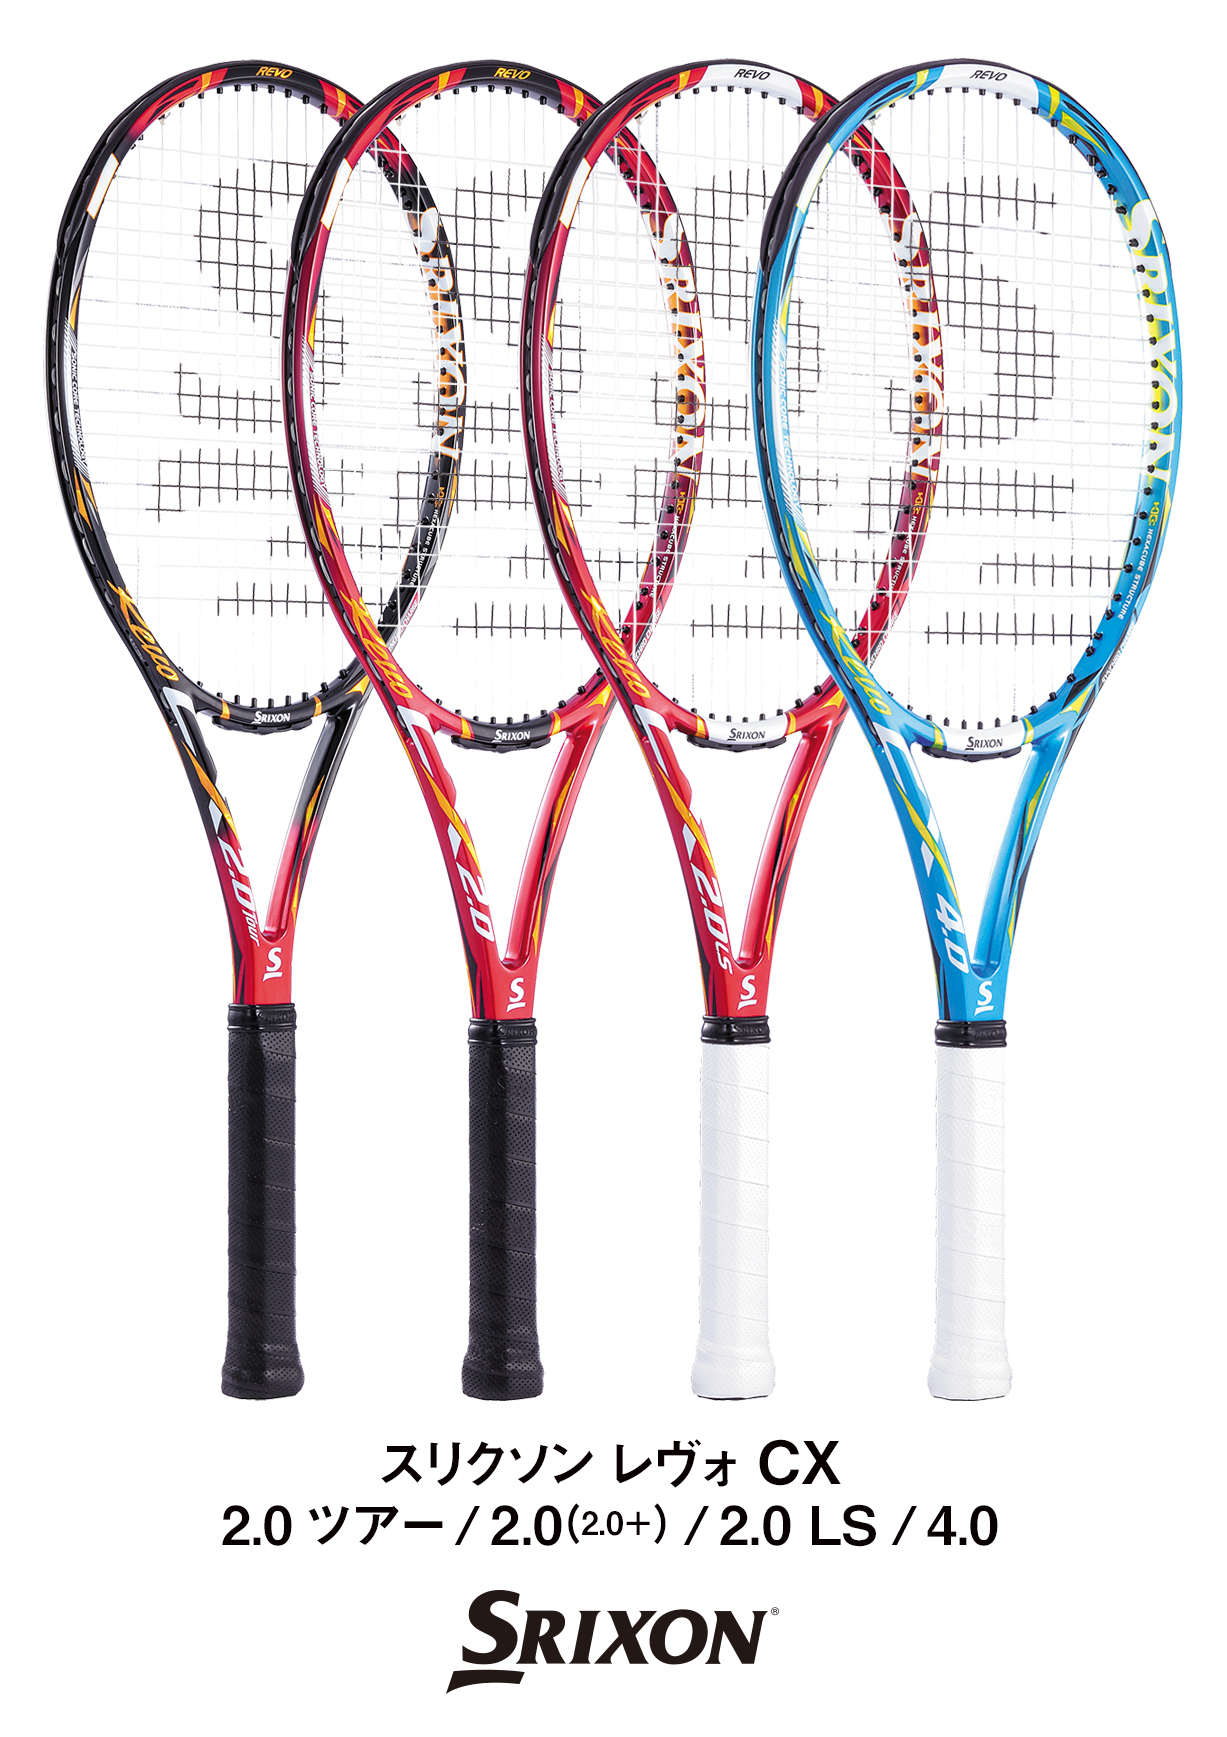 スリクソンテニスラケット「REVO CX(レヴォ シーエックス)」シリーズを ...